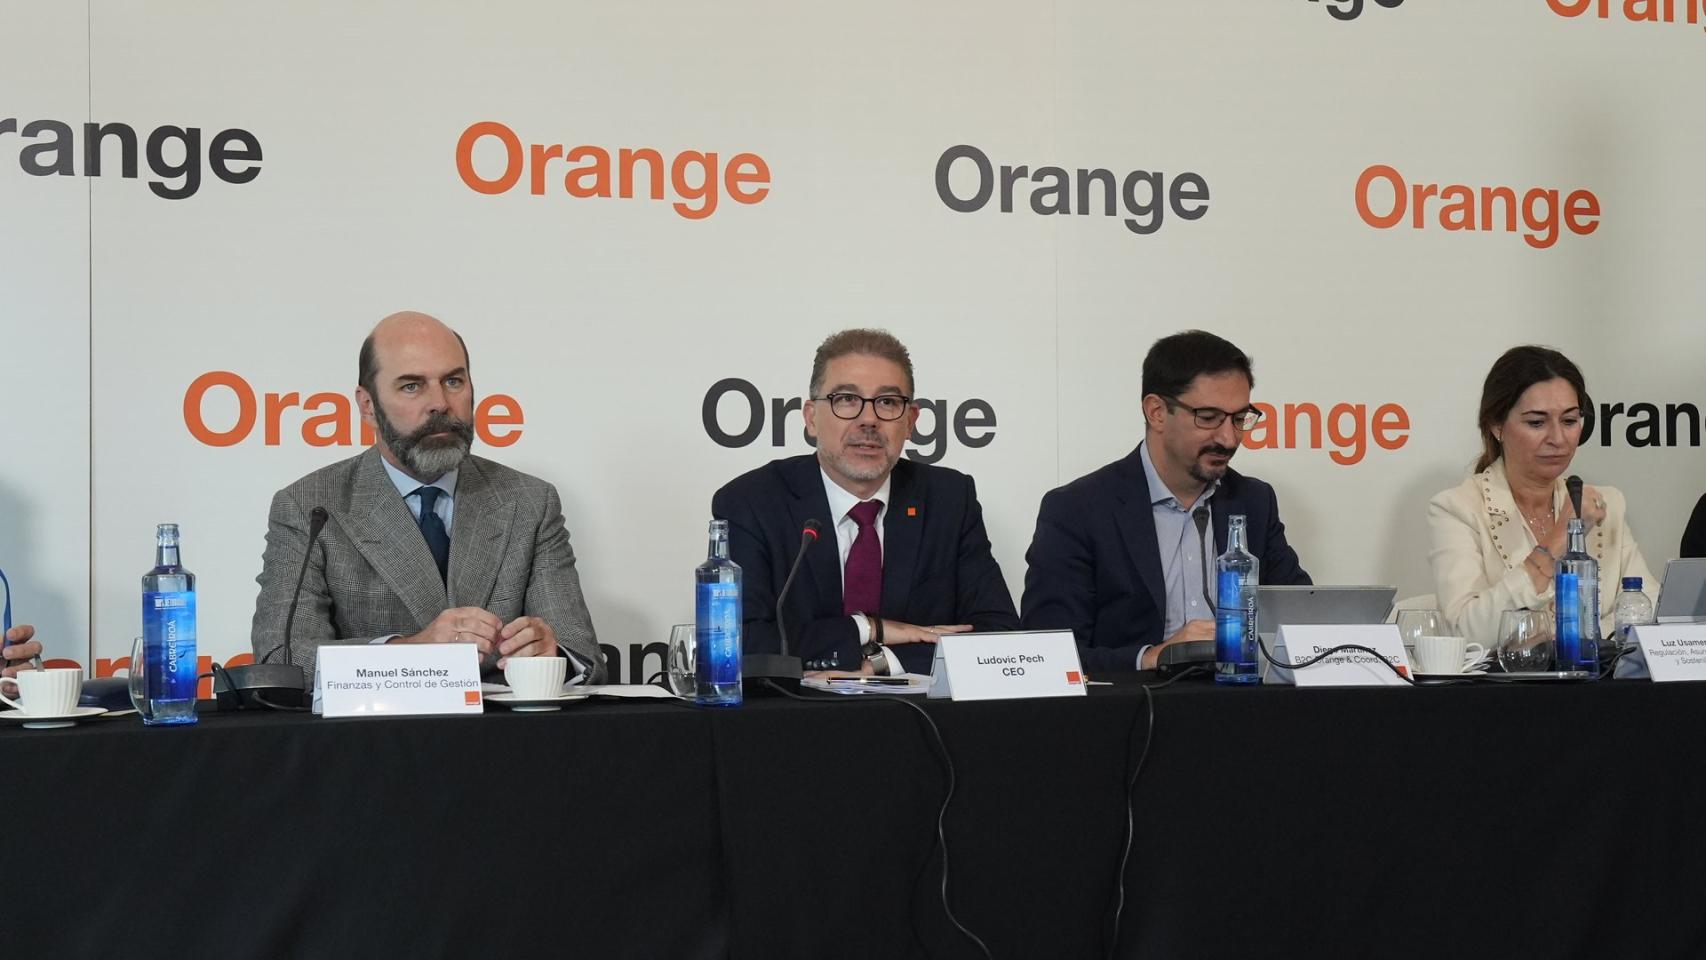 Manuel Sánchez, Ludovich Pech, Diego Martínez y Luz Usamentiaga en la rueda de prensa de resultados de Orange.